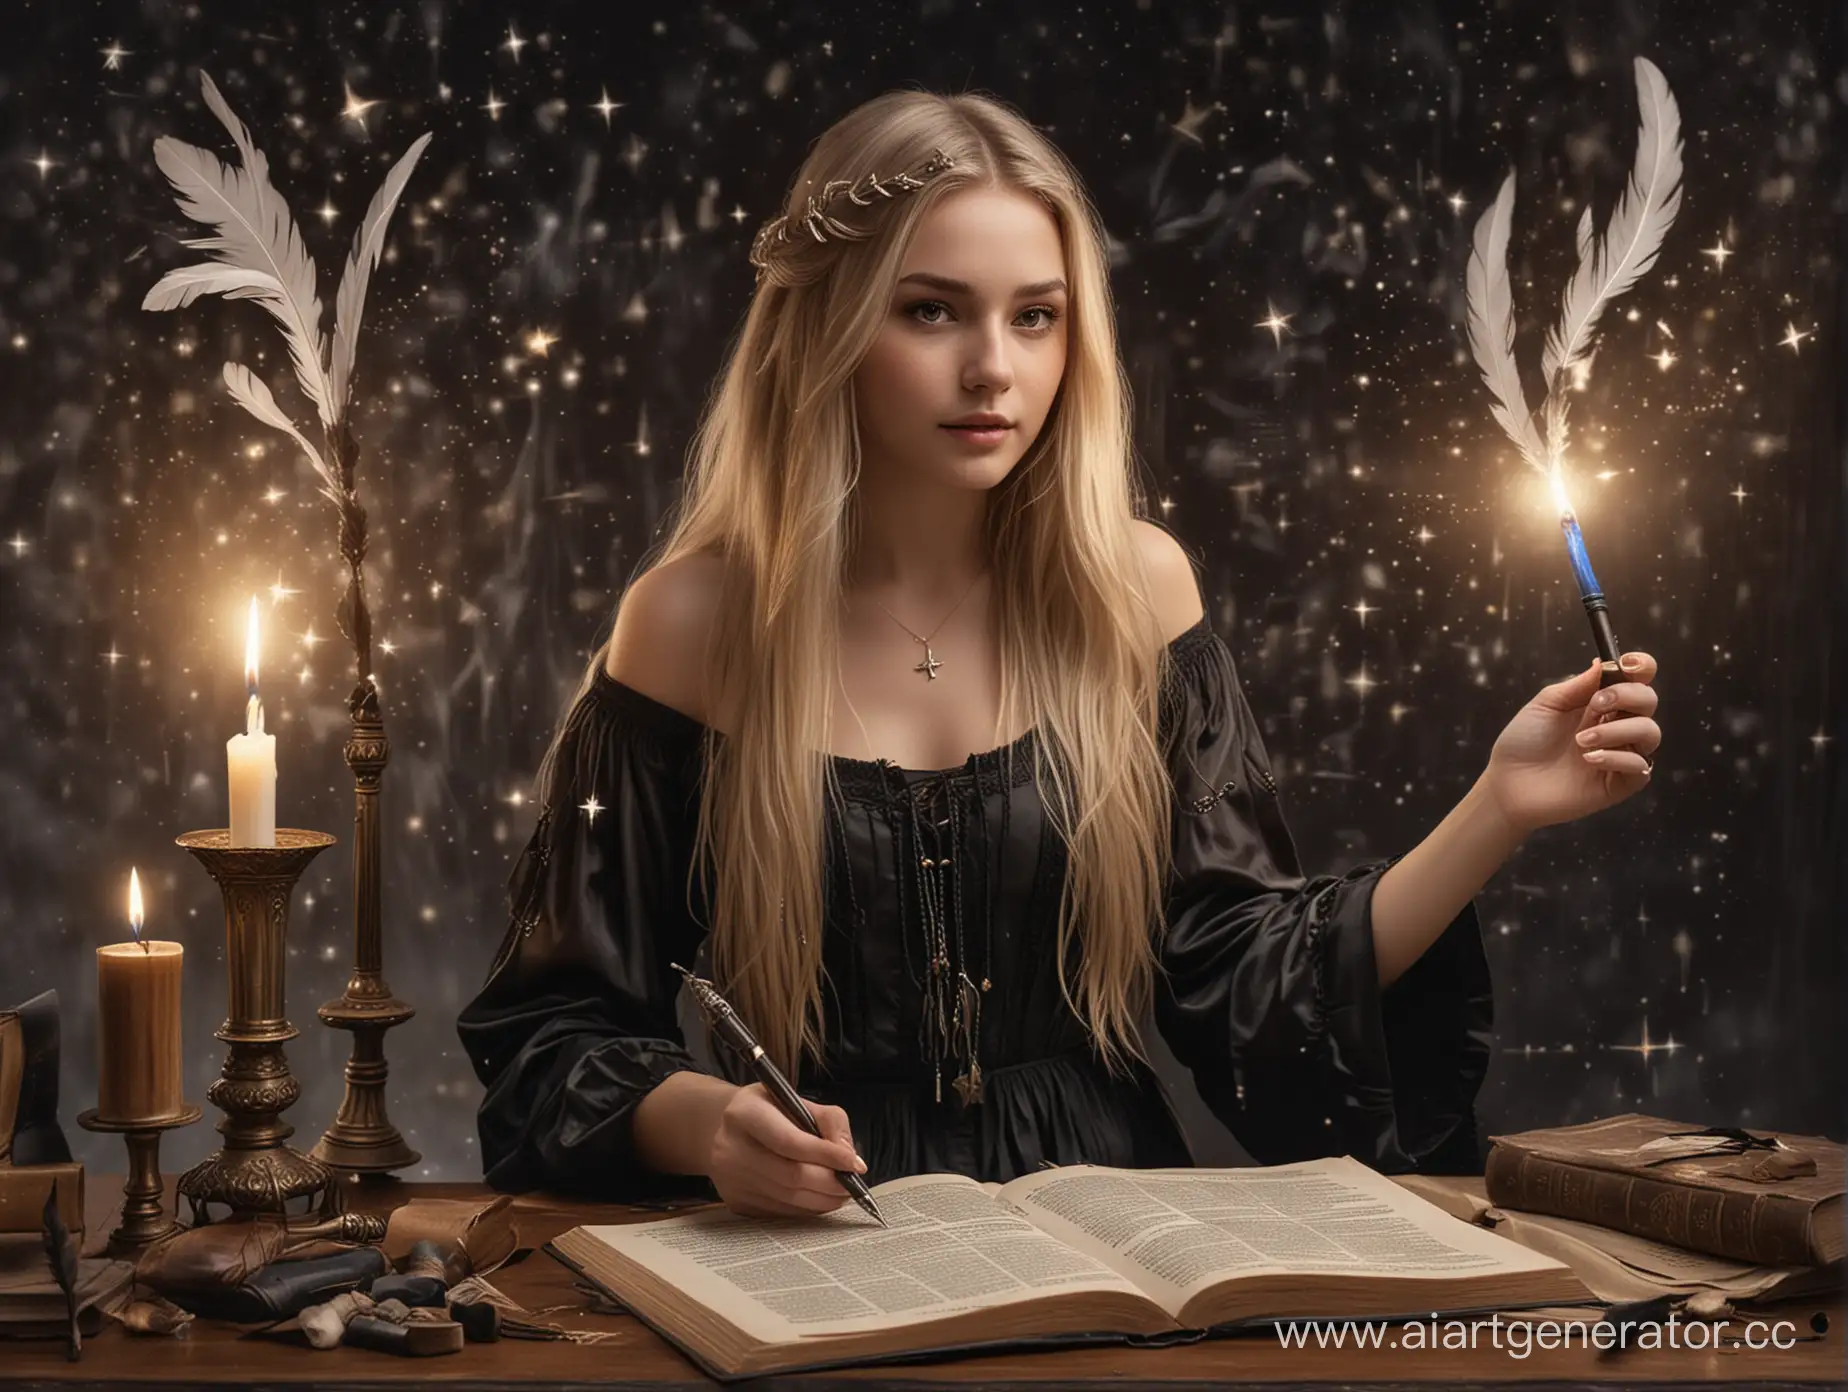 молодая женщина с длинными светлыми волосами, в черном платье с кисточками и книгами в руках. За ней парит перо или перьевая ручка, излучающая свет. На фоне можно добавить звёзды или светящиеся руны